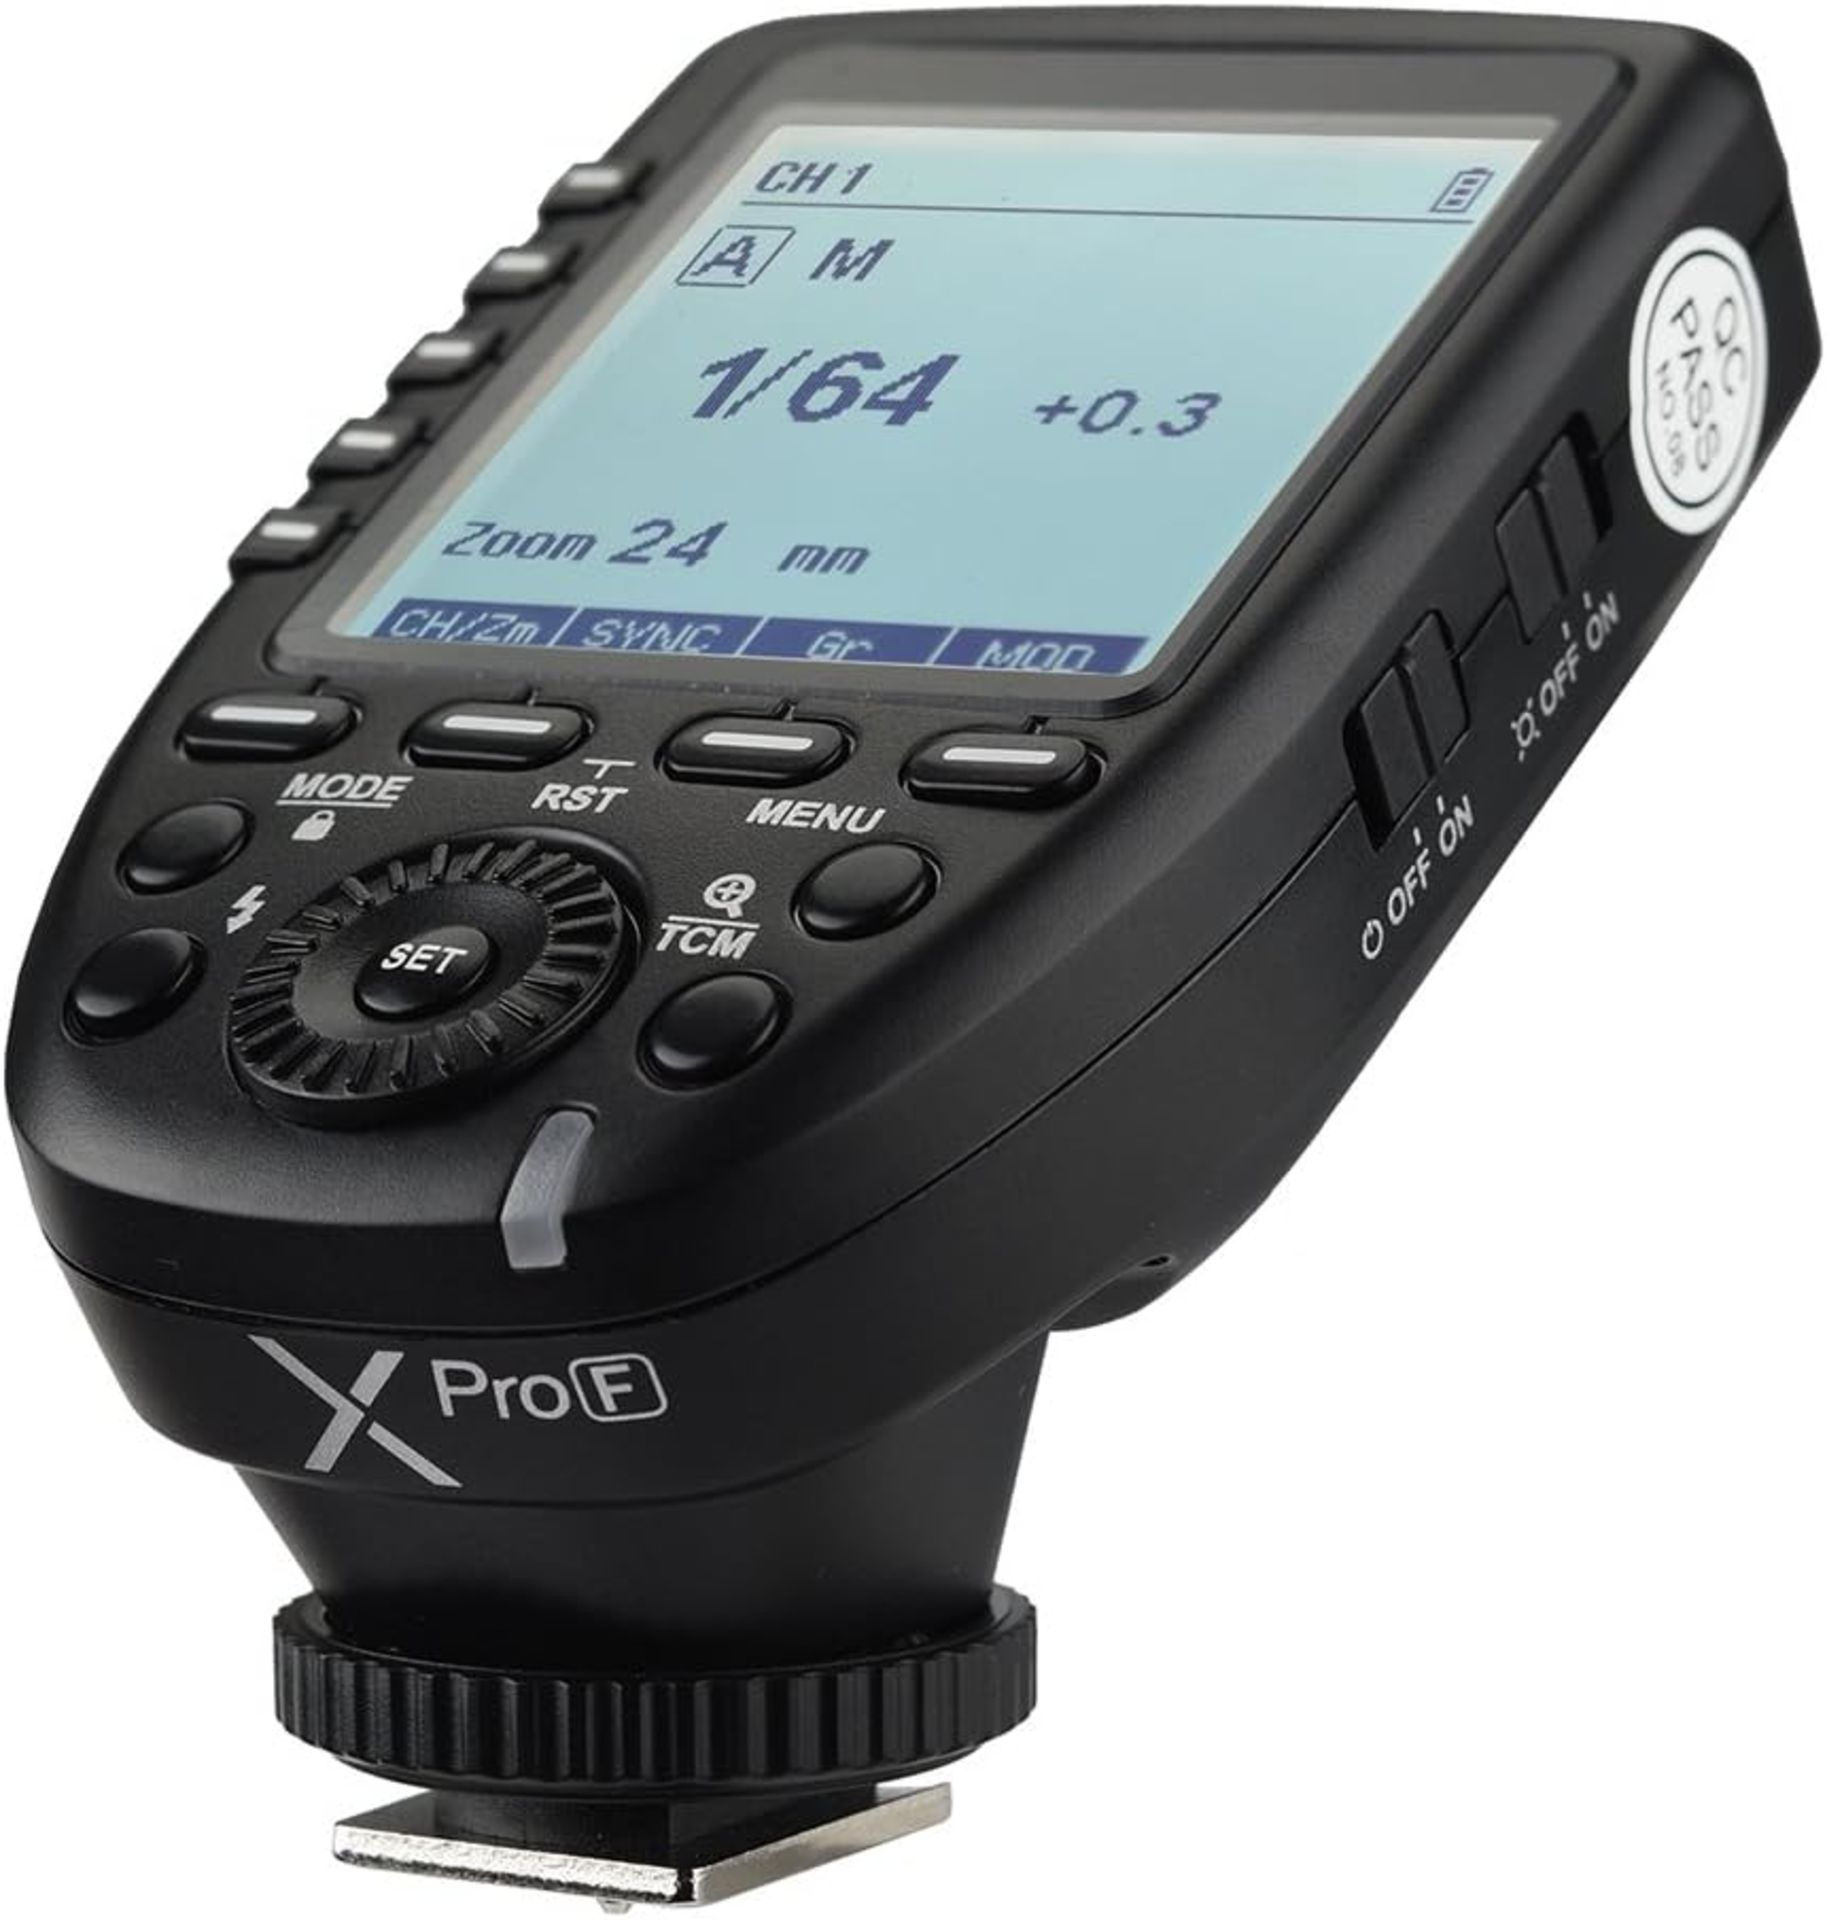 RRP £65.99 Godox Xpro-F TTL Wireless Flash Trigger for Fuji 2.4G 1/8000s HSS TTL Convert-Manual